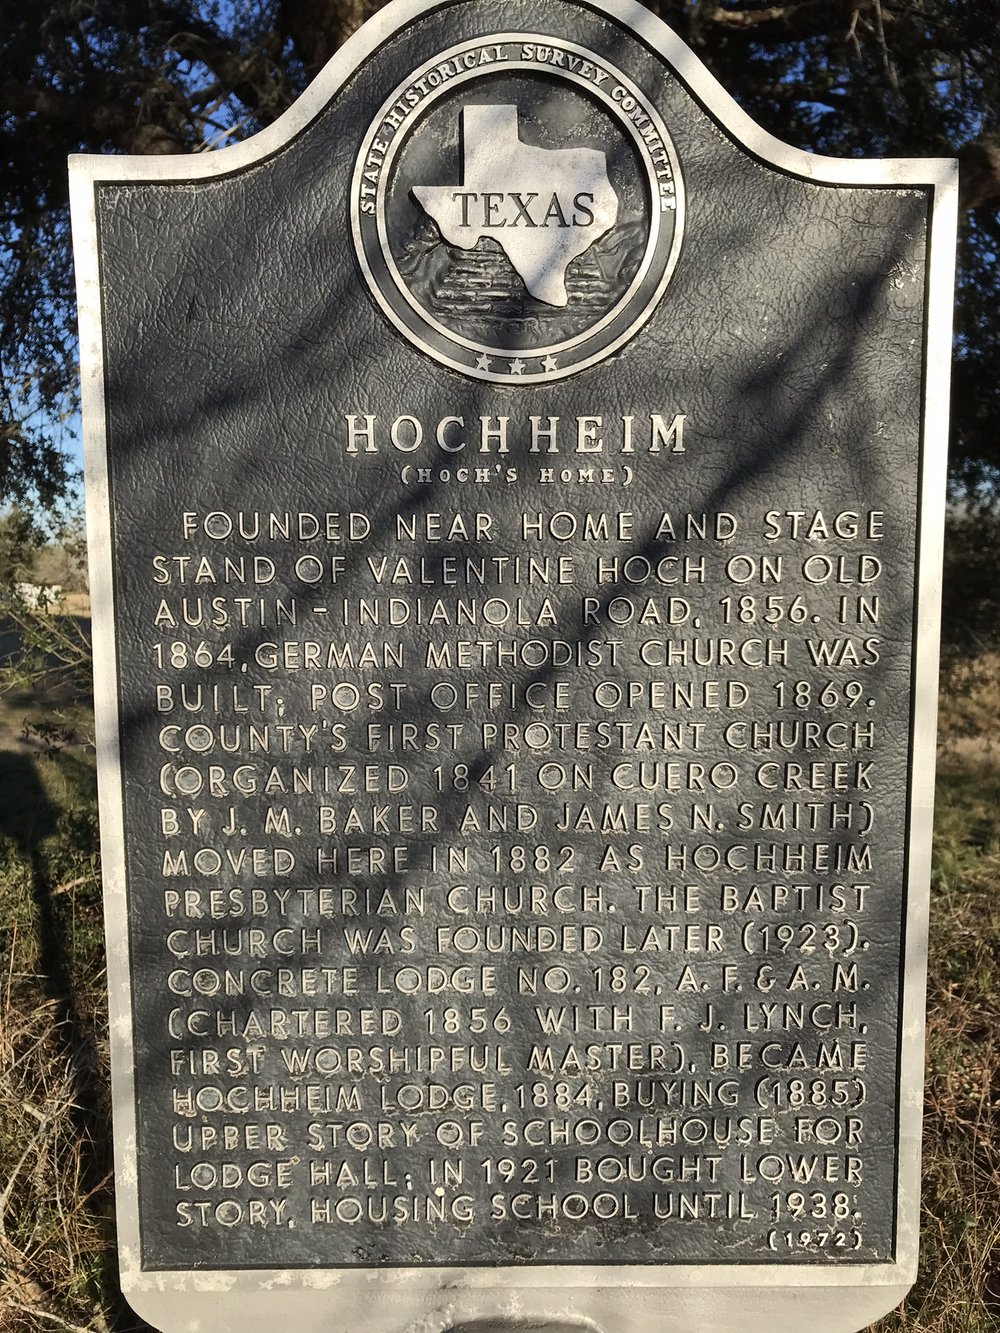 Hochheim (Hoch's Home)